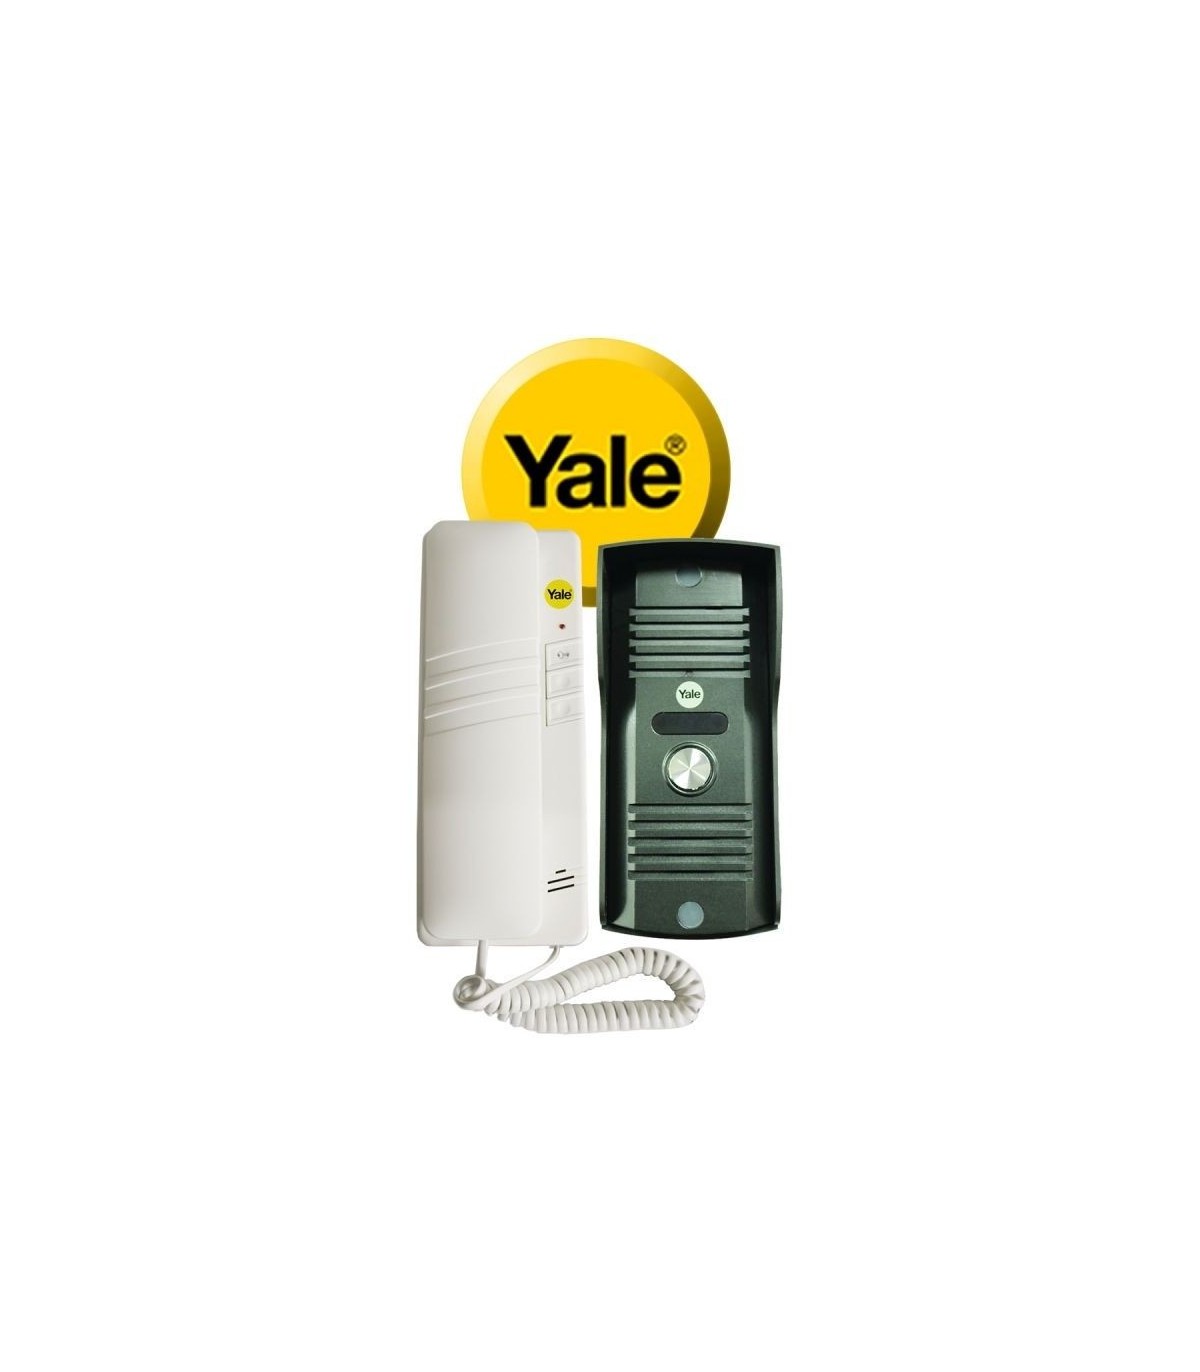 Yale Home Guatemala - Kit Vídeo Portero YDV-4702 💵 Precio: Q1,726.90  Características principales: 🖥 Pantalla LCD a color de 4” con auricular 🔊  Portero eléctrico con timbre, cámara e intercomunicador 🚪 Permite